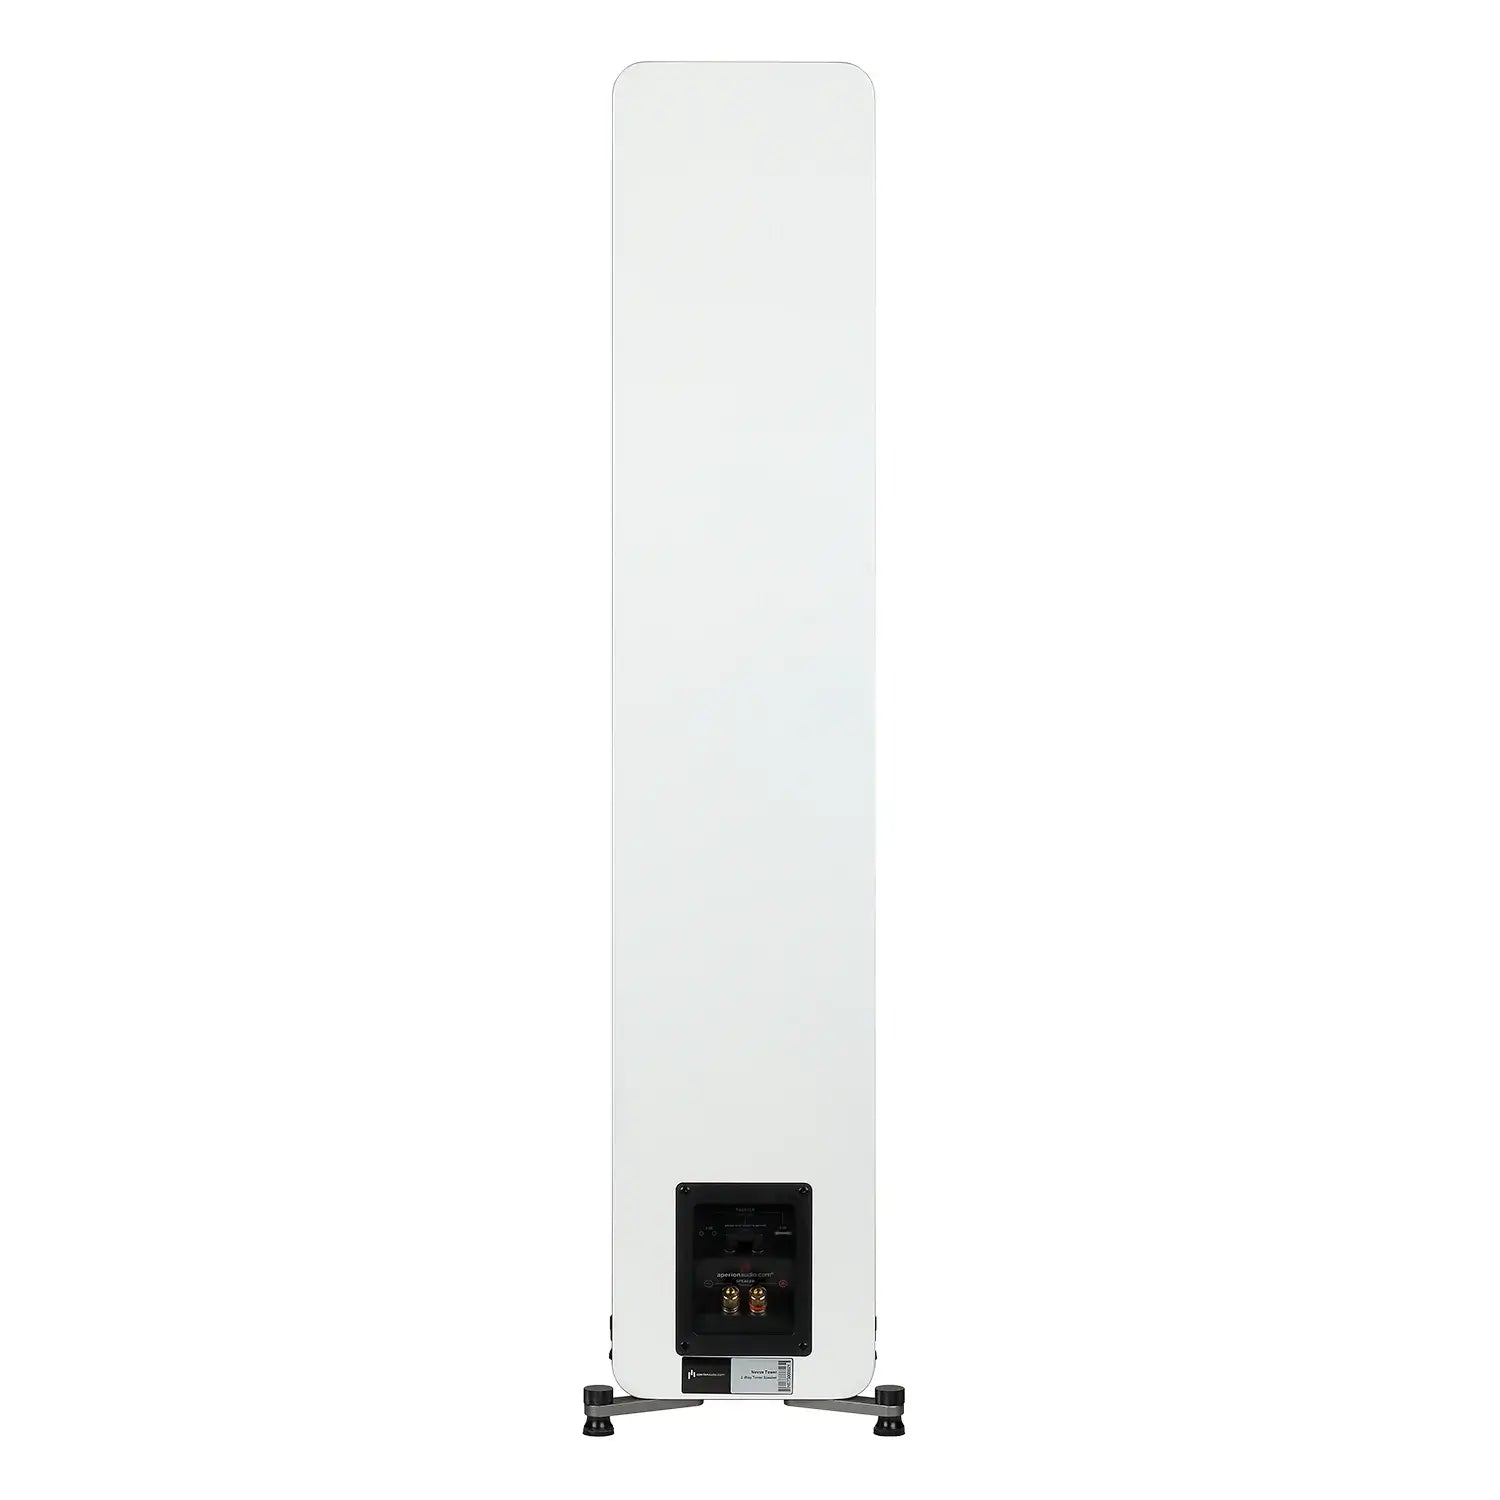 Aperion-Novus-N5T-2Way-Dual-5.25"-Floorstanding-Tower-Speaker-White-Backside-aperionaudio